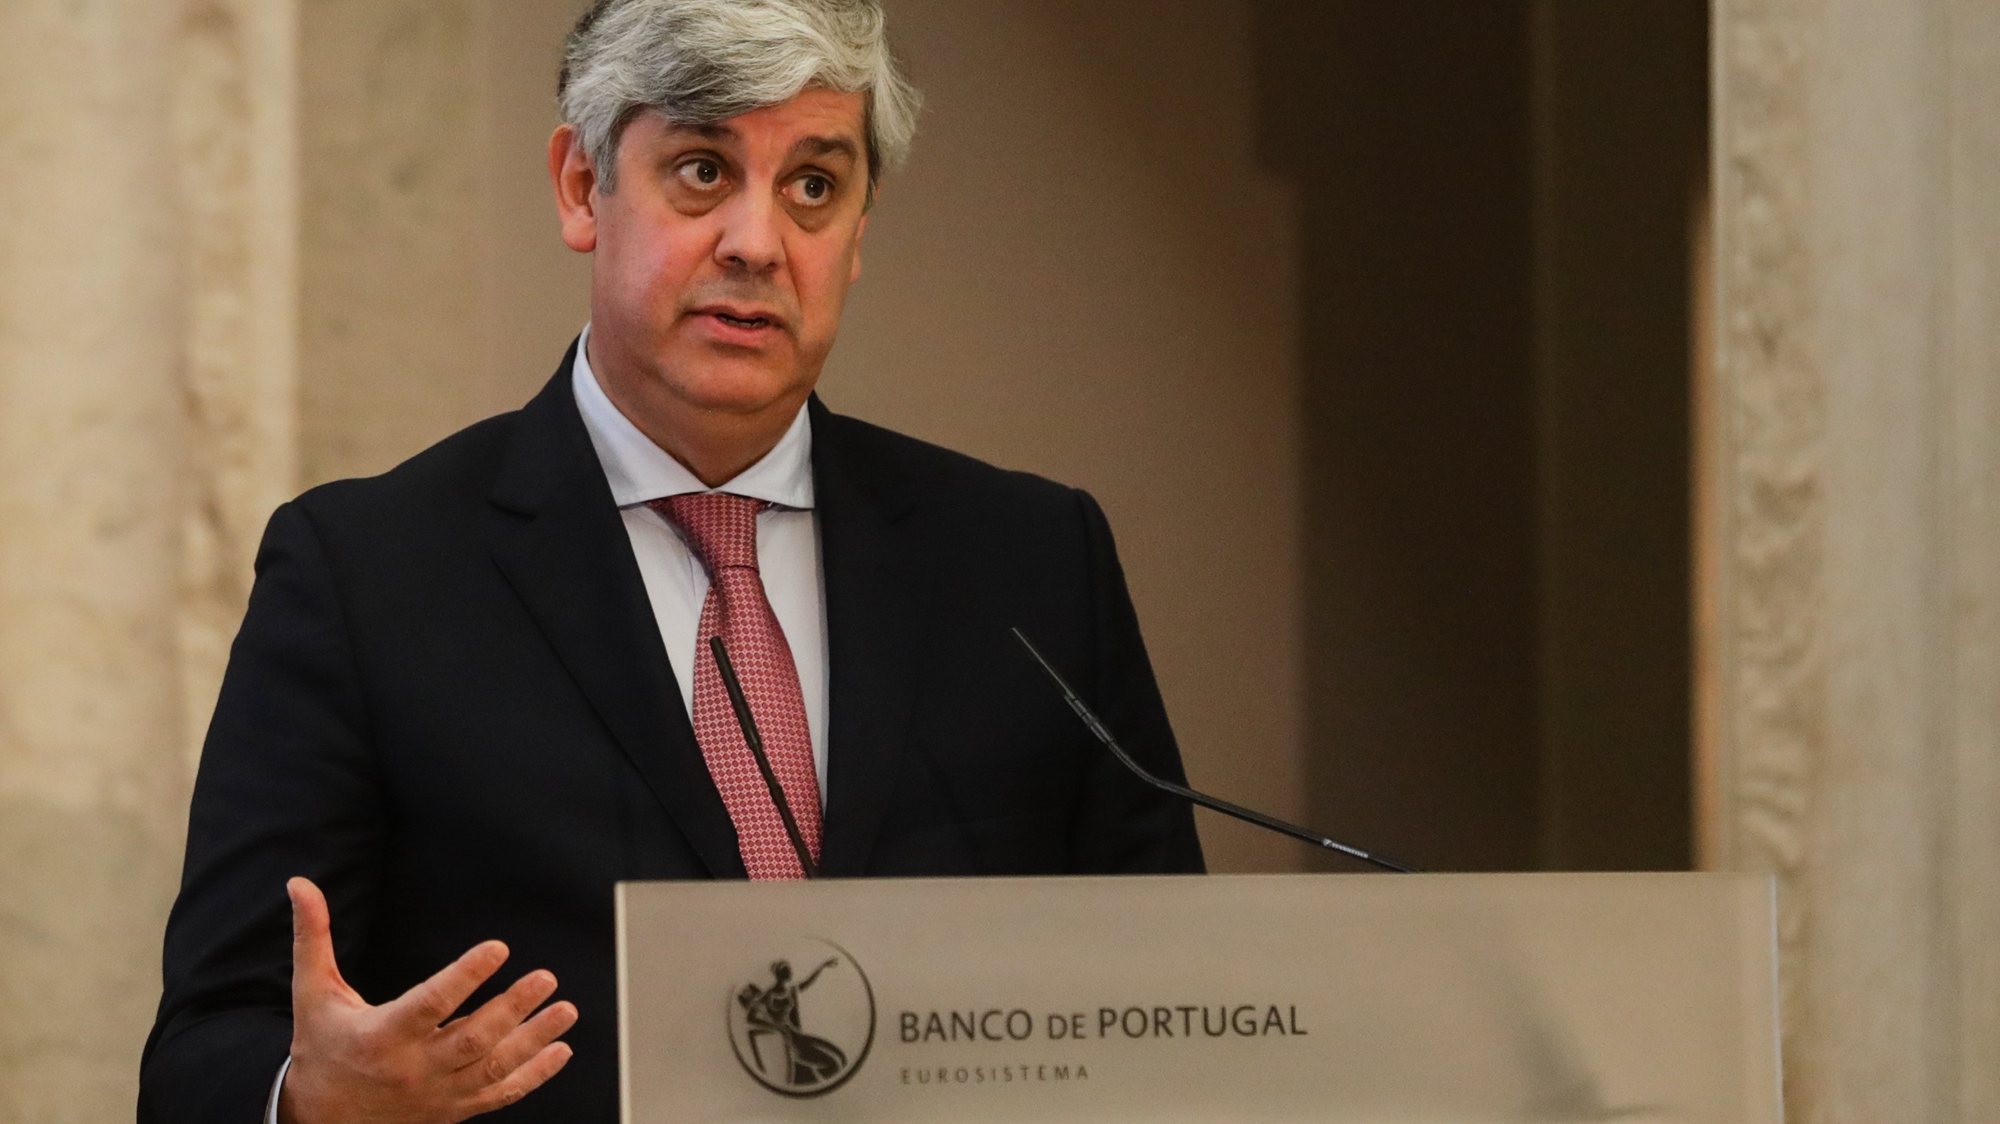 O governador do Banco de Portugal, Mário Centeno, intervém durante a apresentação do Boletim Económico de dezembro, que inclui projeções para a evolução da economia portuguesa no período 2020 a 2023, na sede em Lisboa, 14 de dezembro de 2020. TIAGO PETINGA/POOL/LUSA